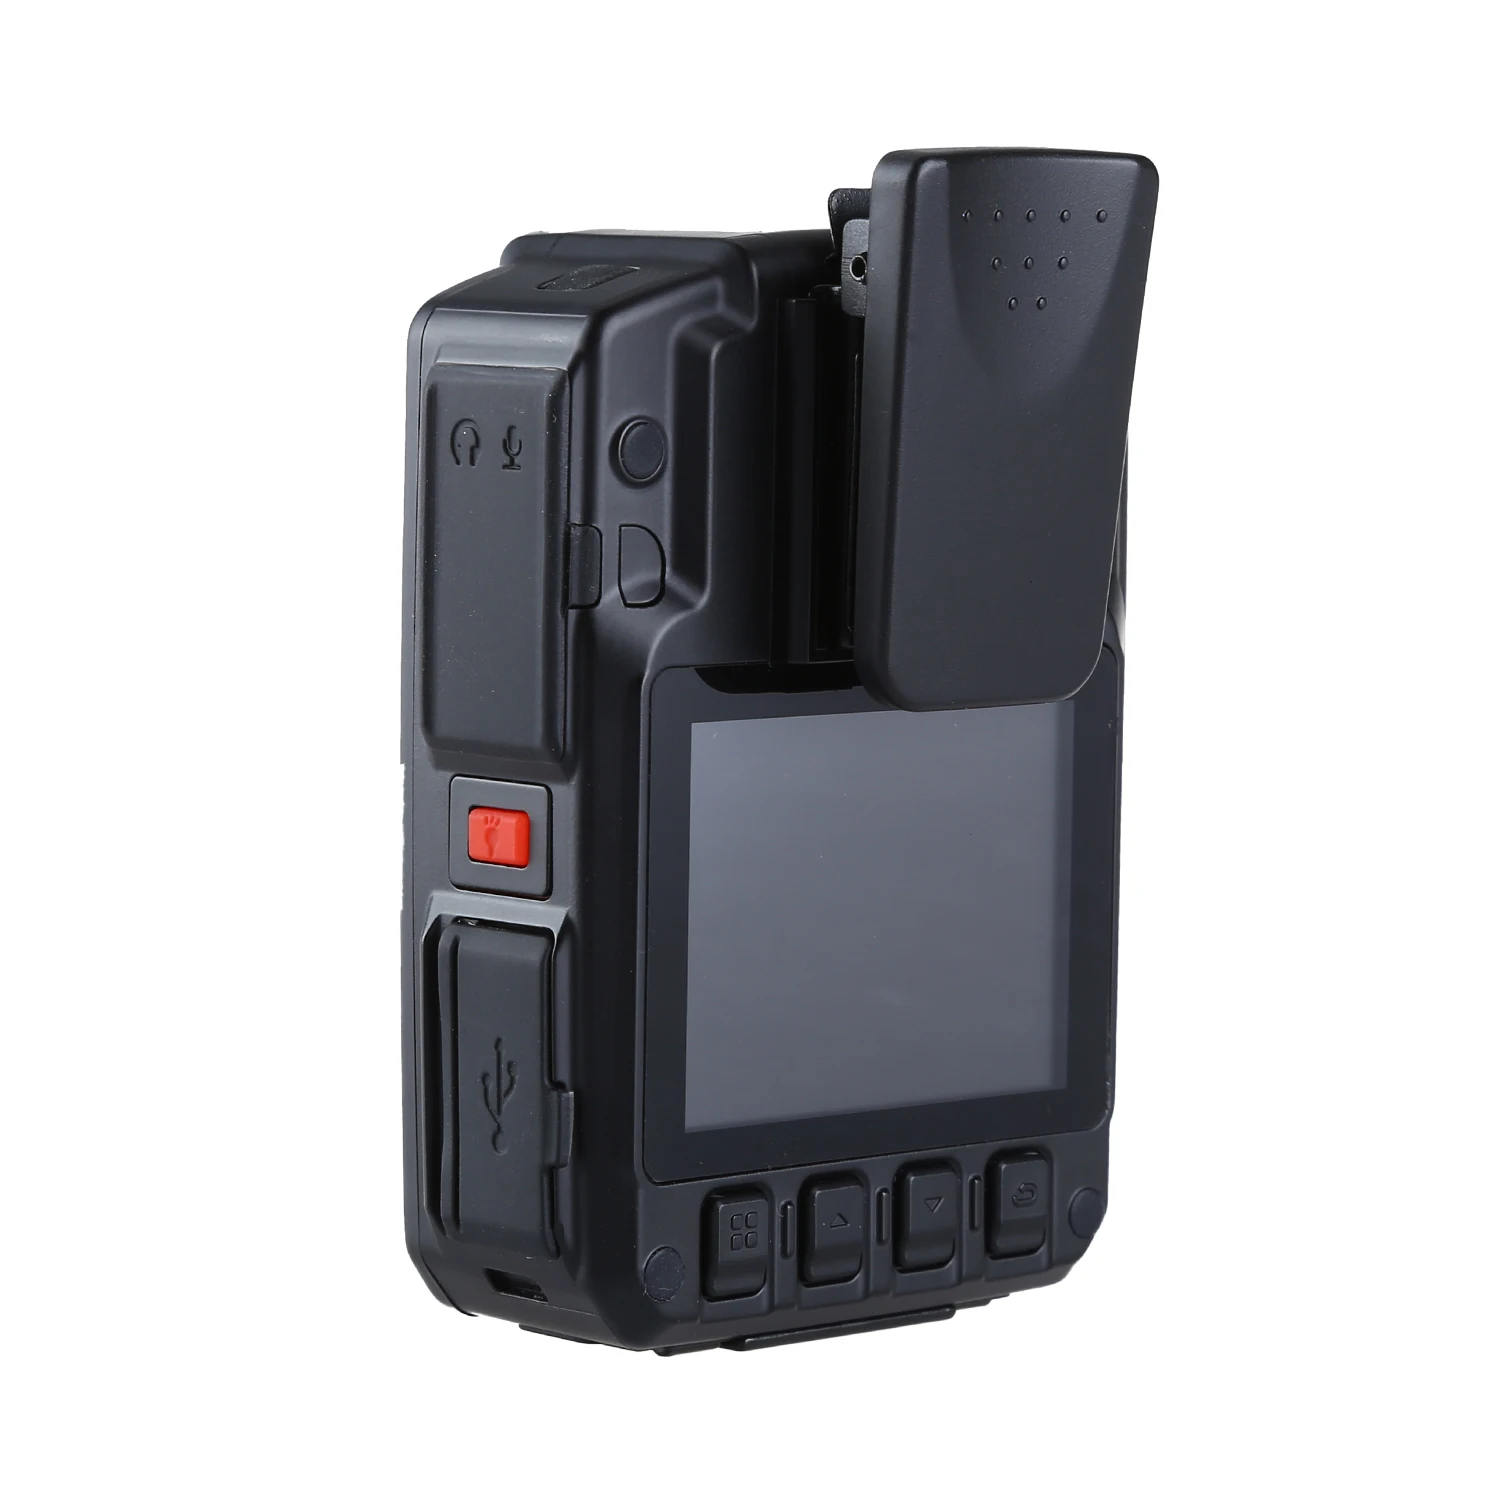 BOBLOV HD66-07 gps 4 г средства ухода за кожей полицейская видеокамера DVR 64 Гб правоприменения Cam 2 дюймов ЖК дисплей с 1950 мАч батарея 170 градусов